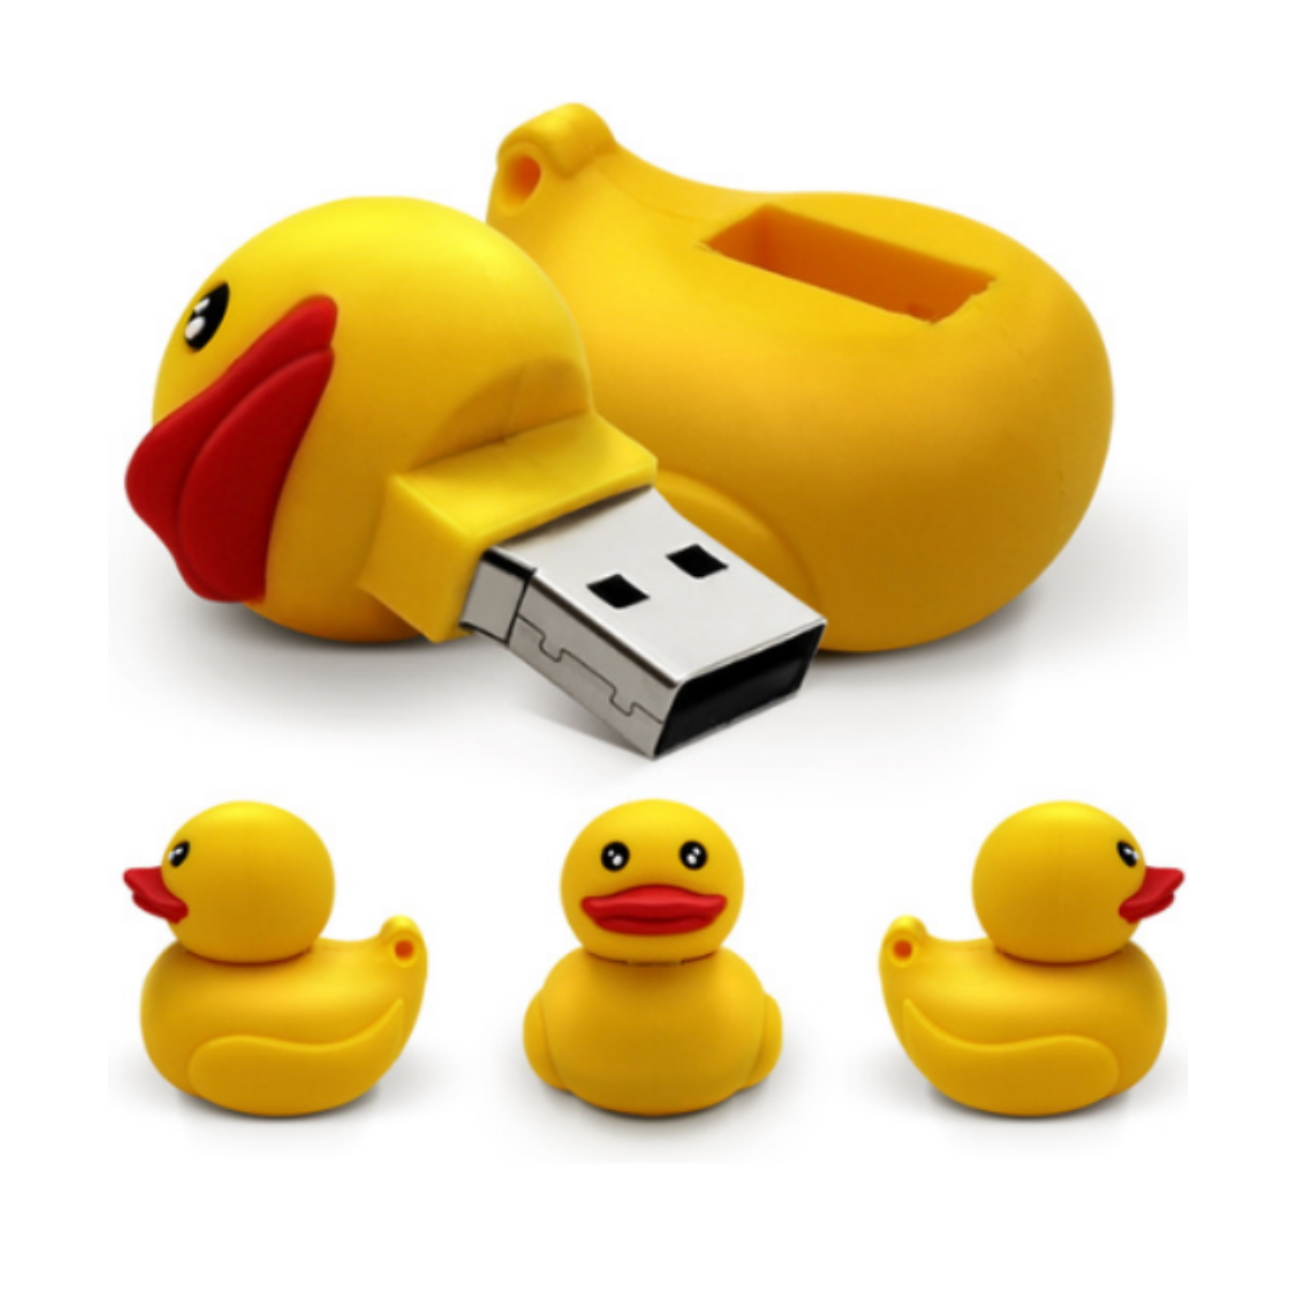 USB GERMANY Ente USB-Stick GB) (Gelb, 4